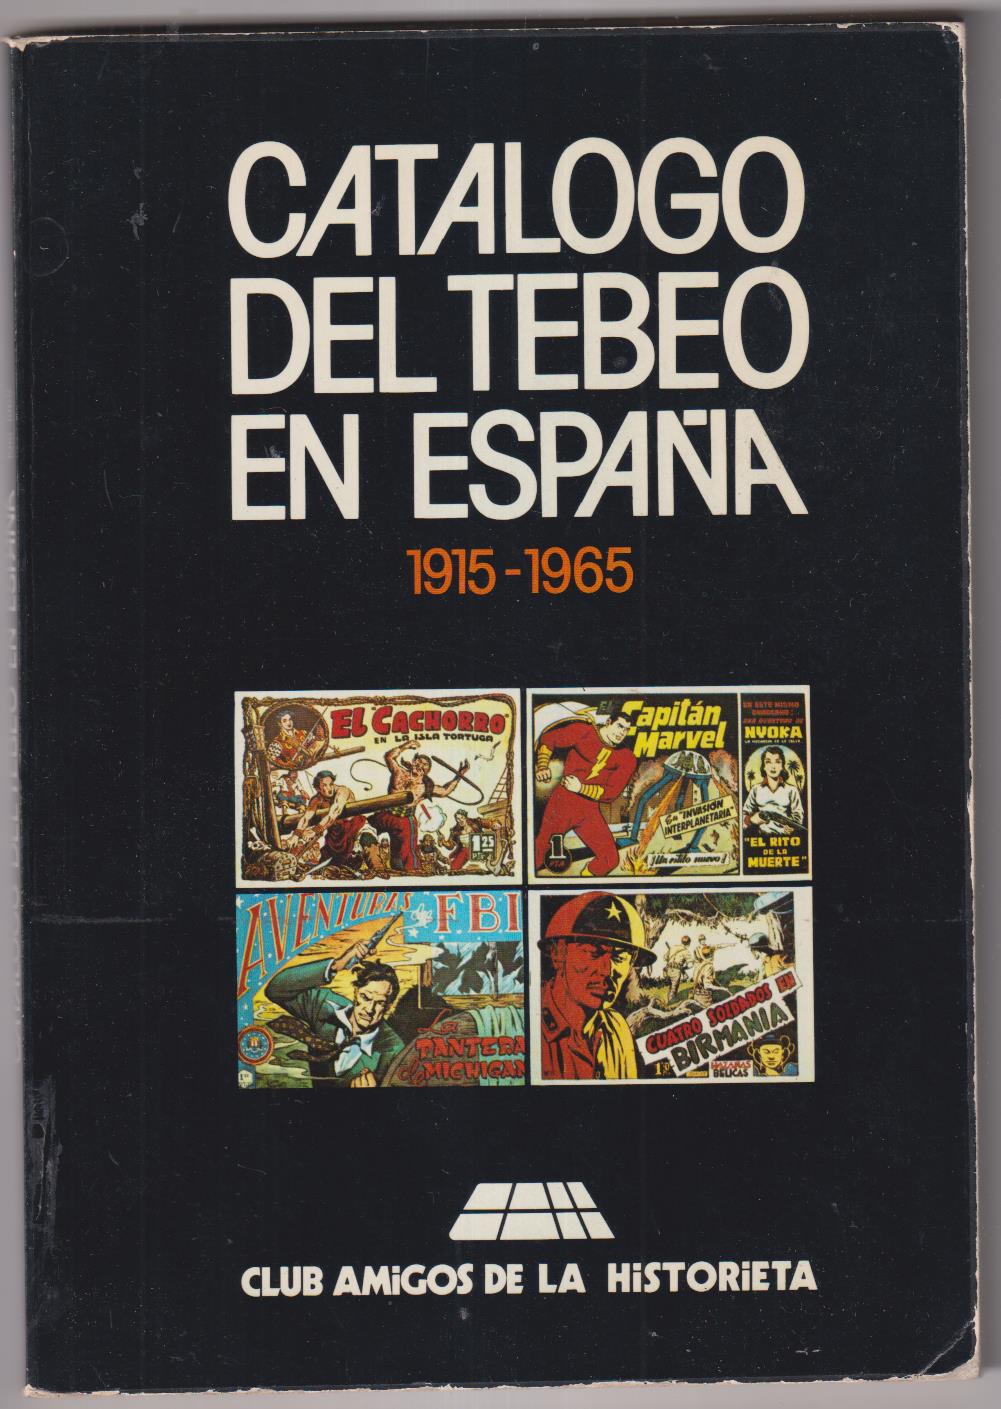 Catálogo del Tebeo en España 1915-1965. Club amigos de la Historieta. 1980. SIN USAR